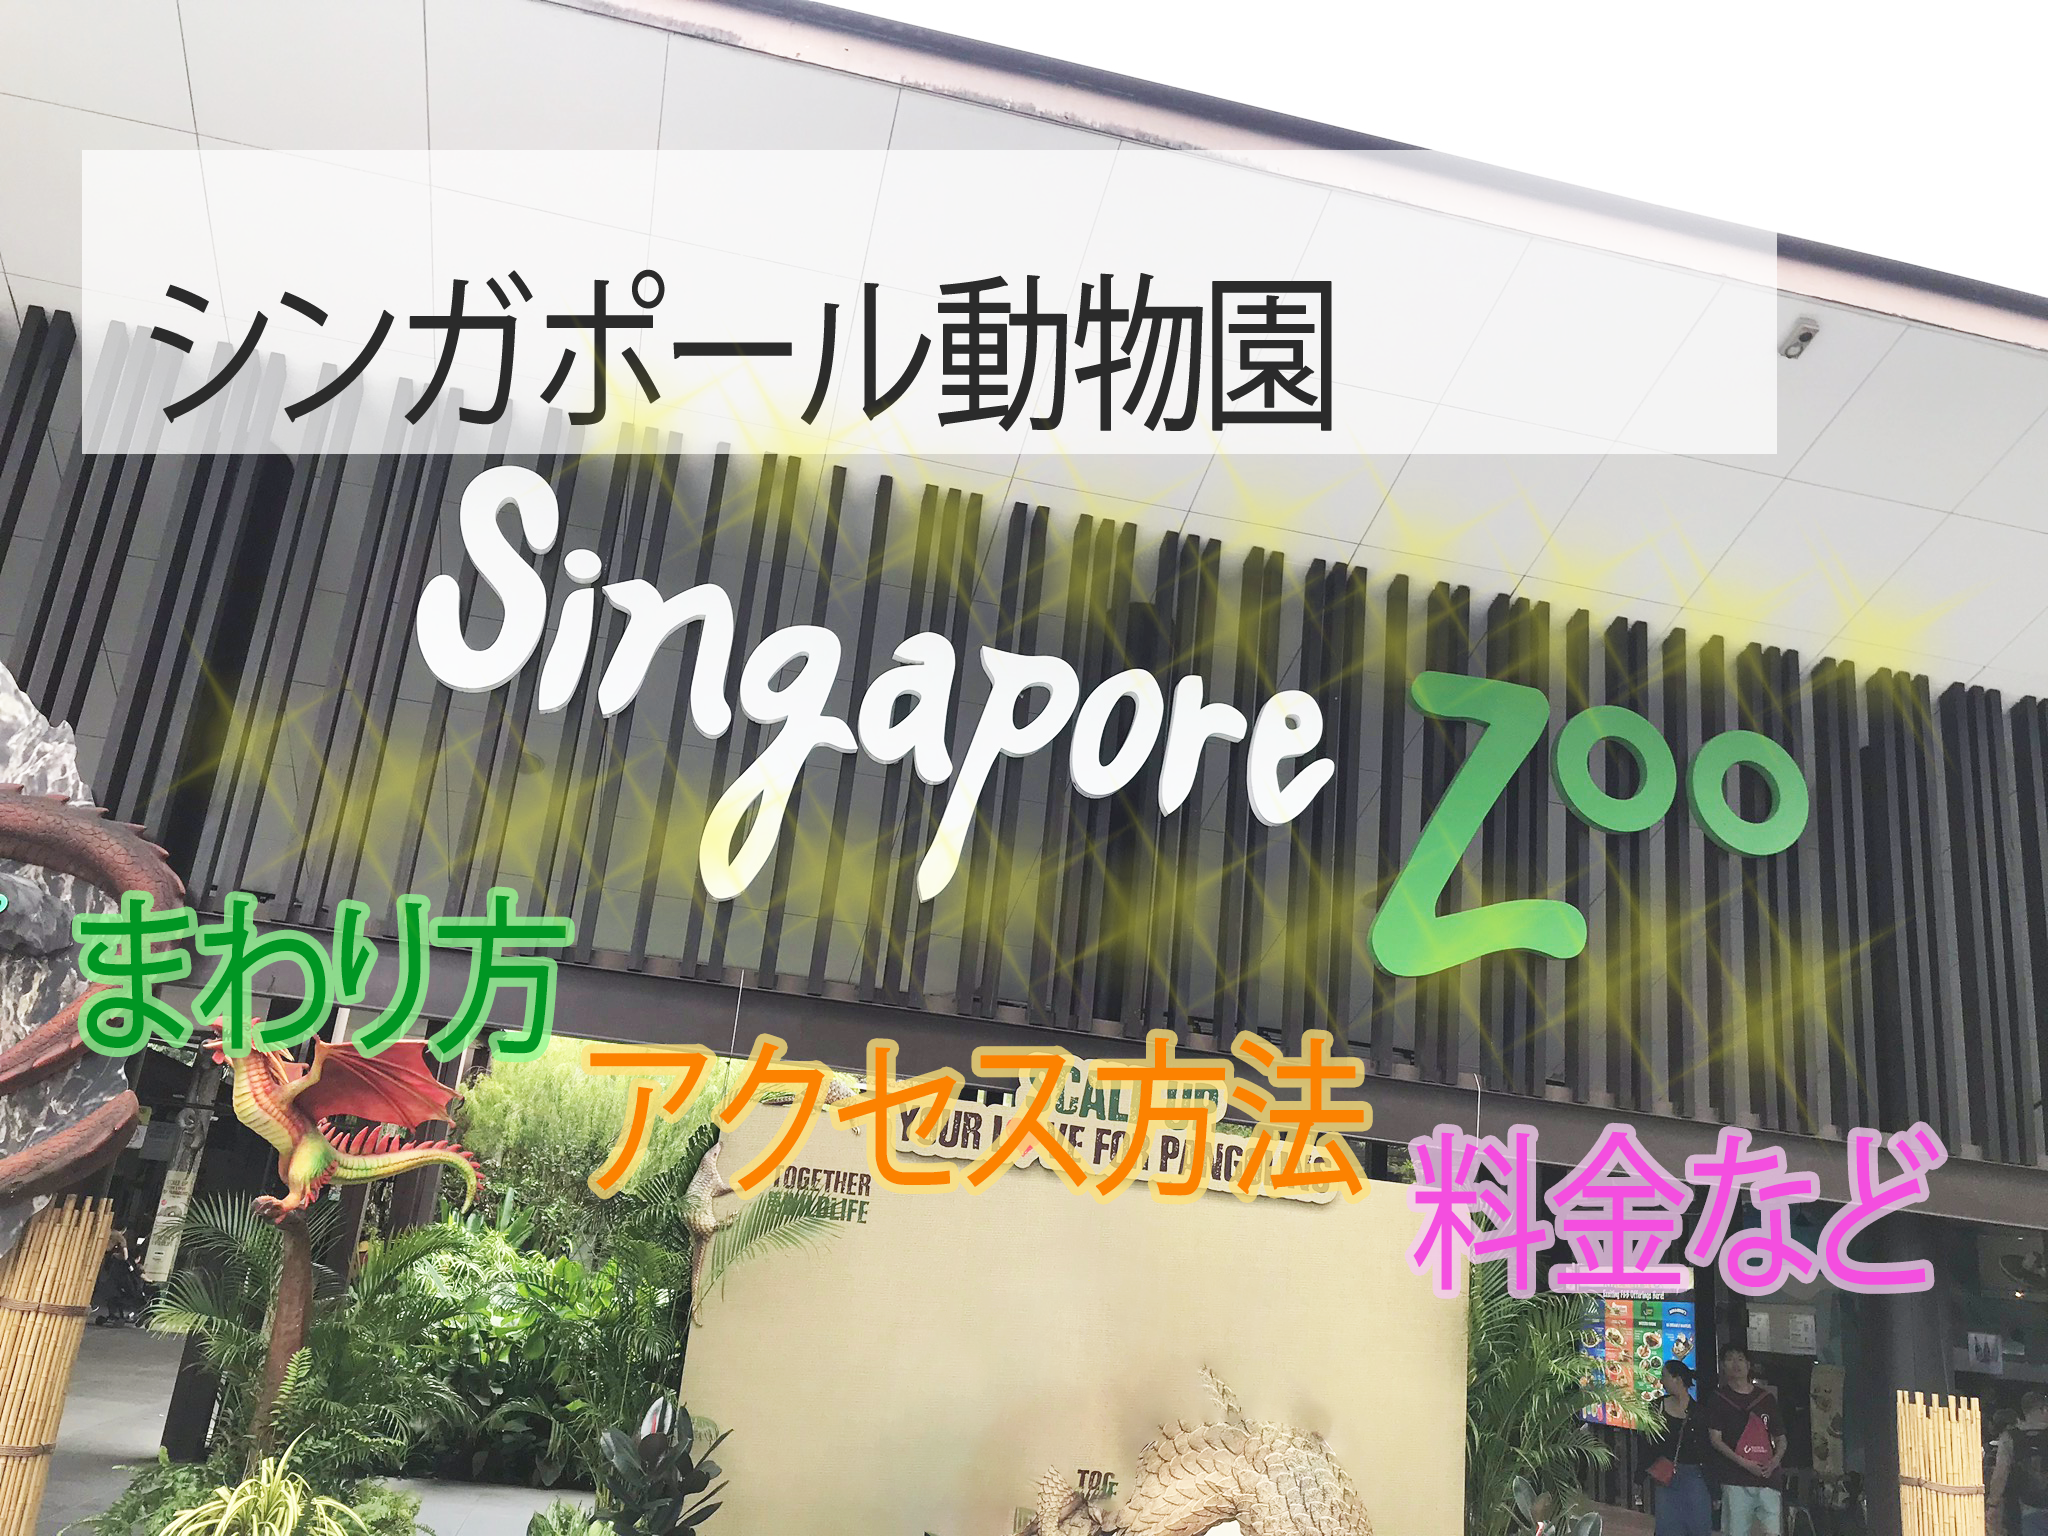 シンガポール動物園-効率のいいまわり方、アクセス方法、料金など